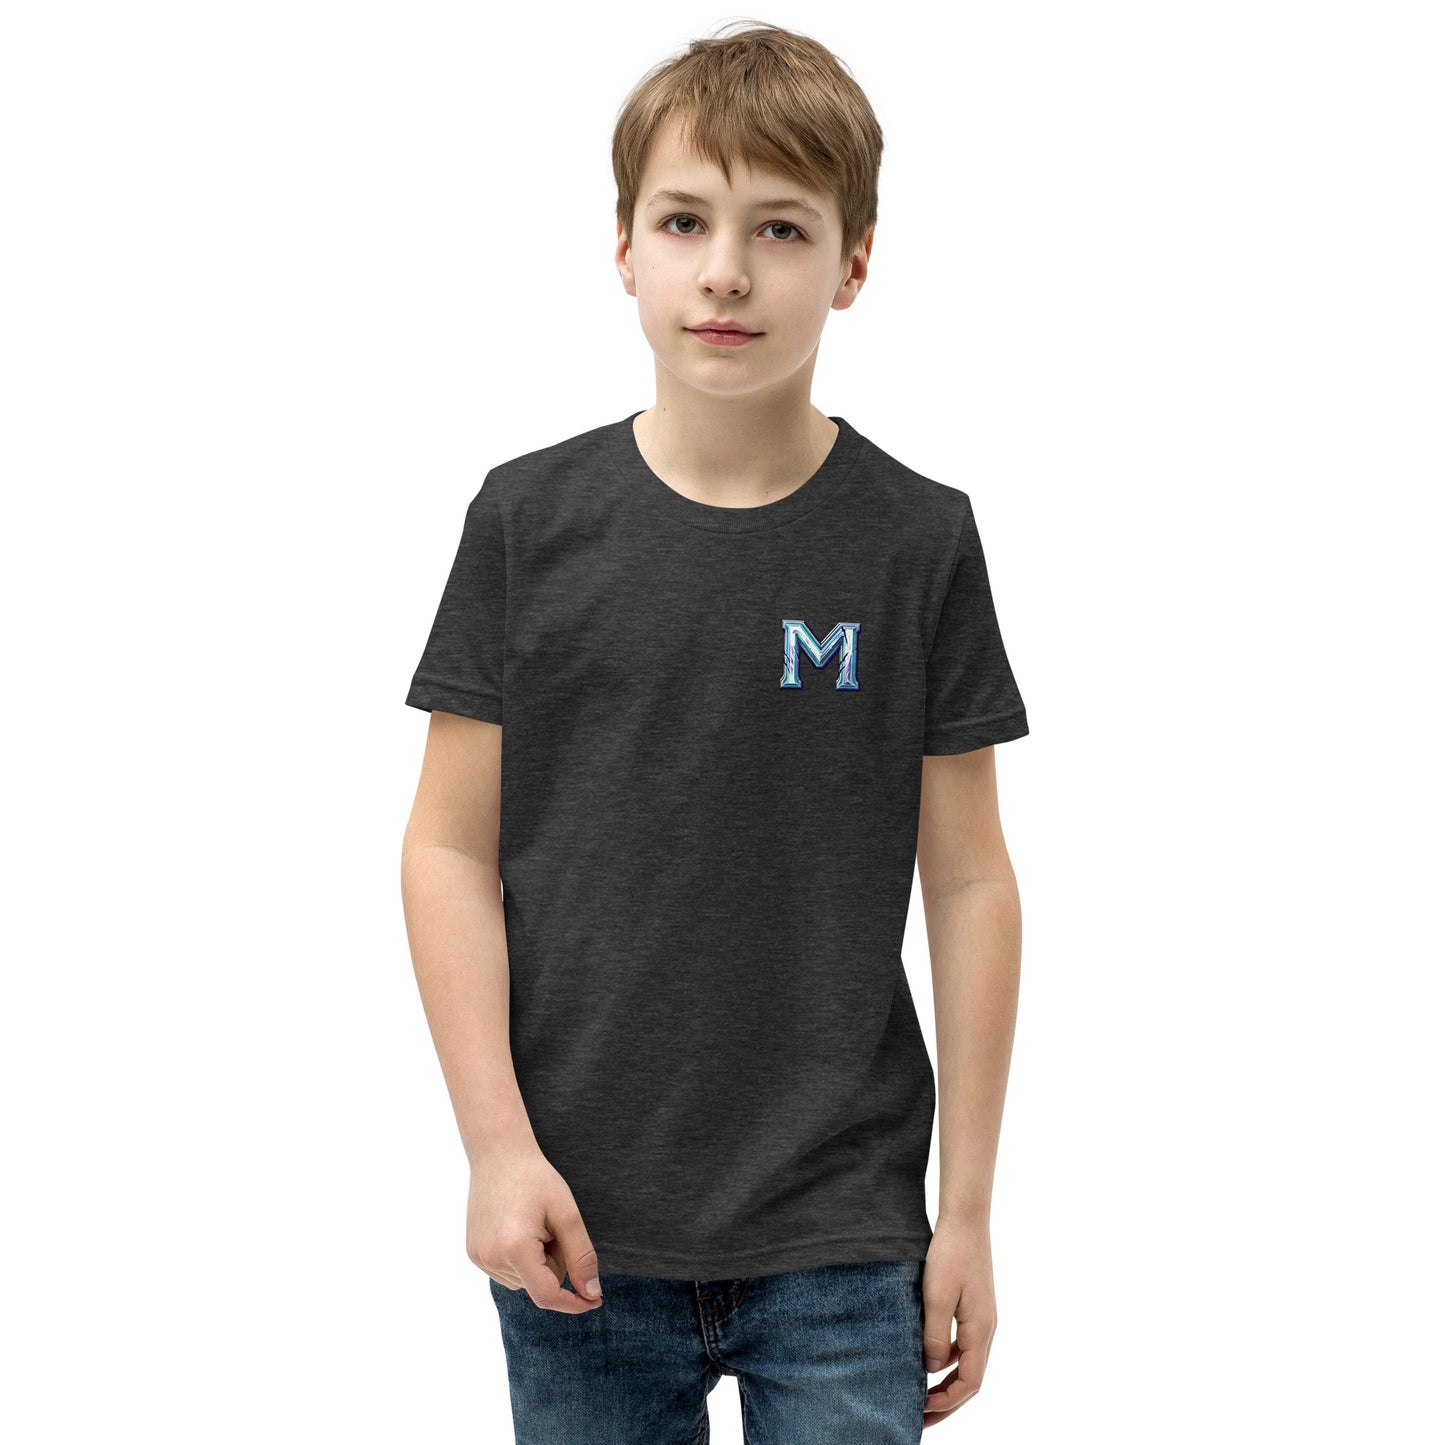 Medivia M Kid's T-Shirt